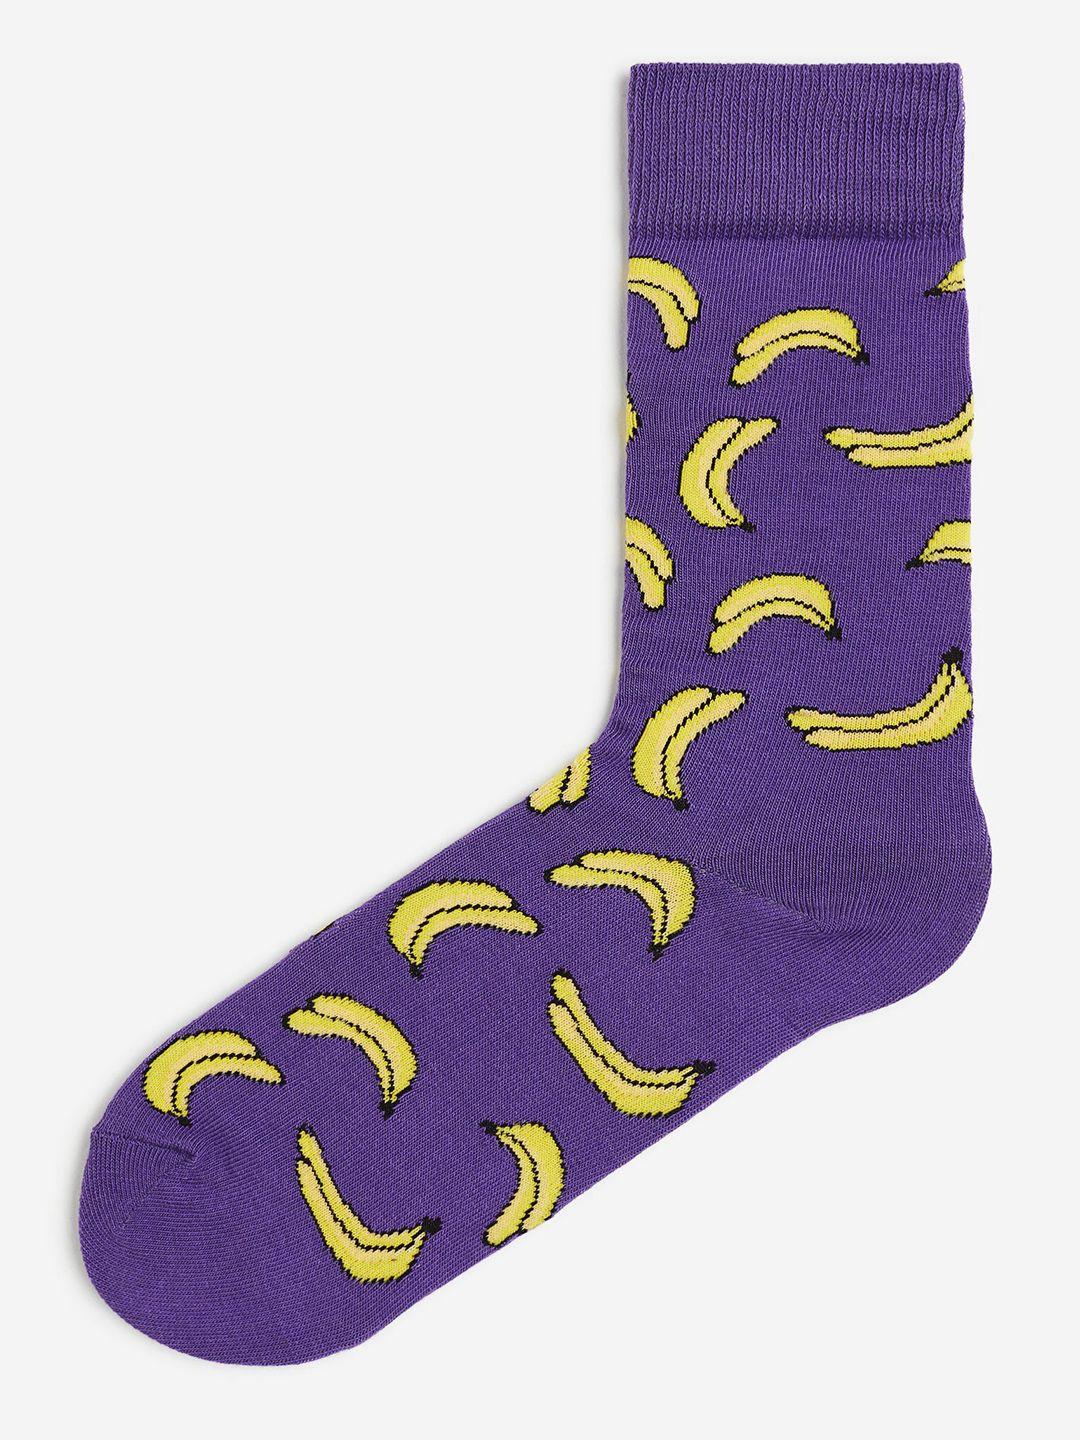 h&m men patterned socks